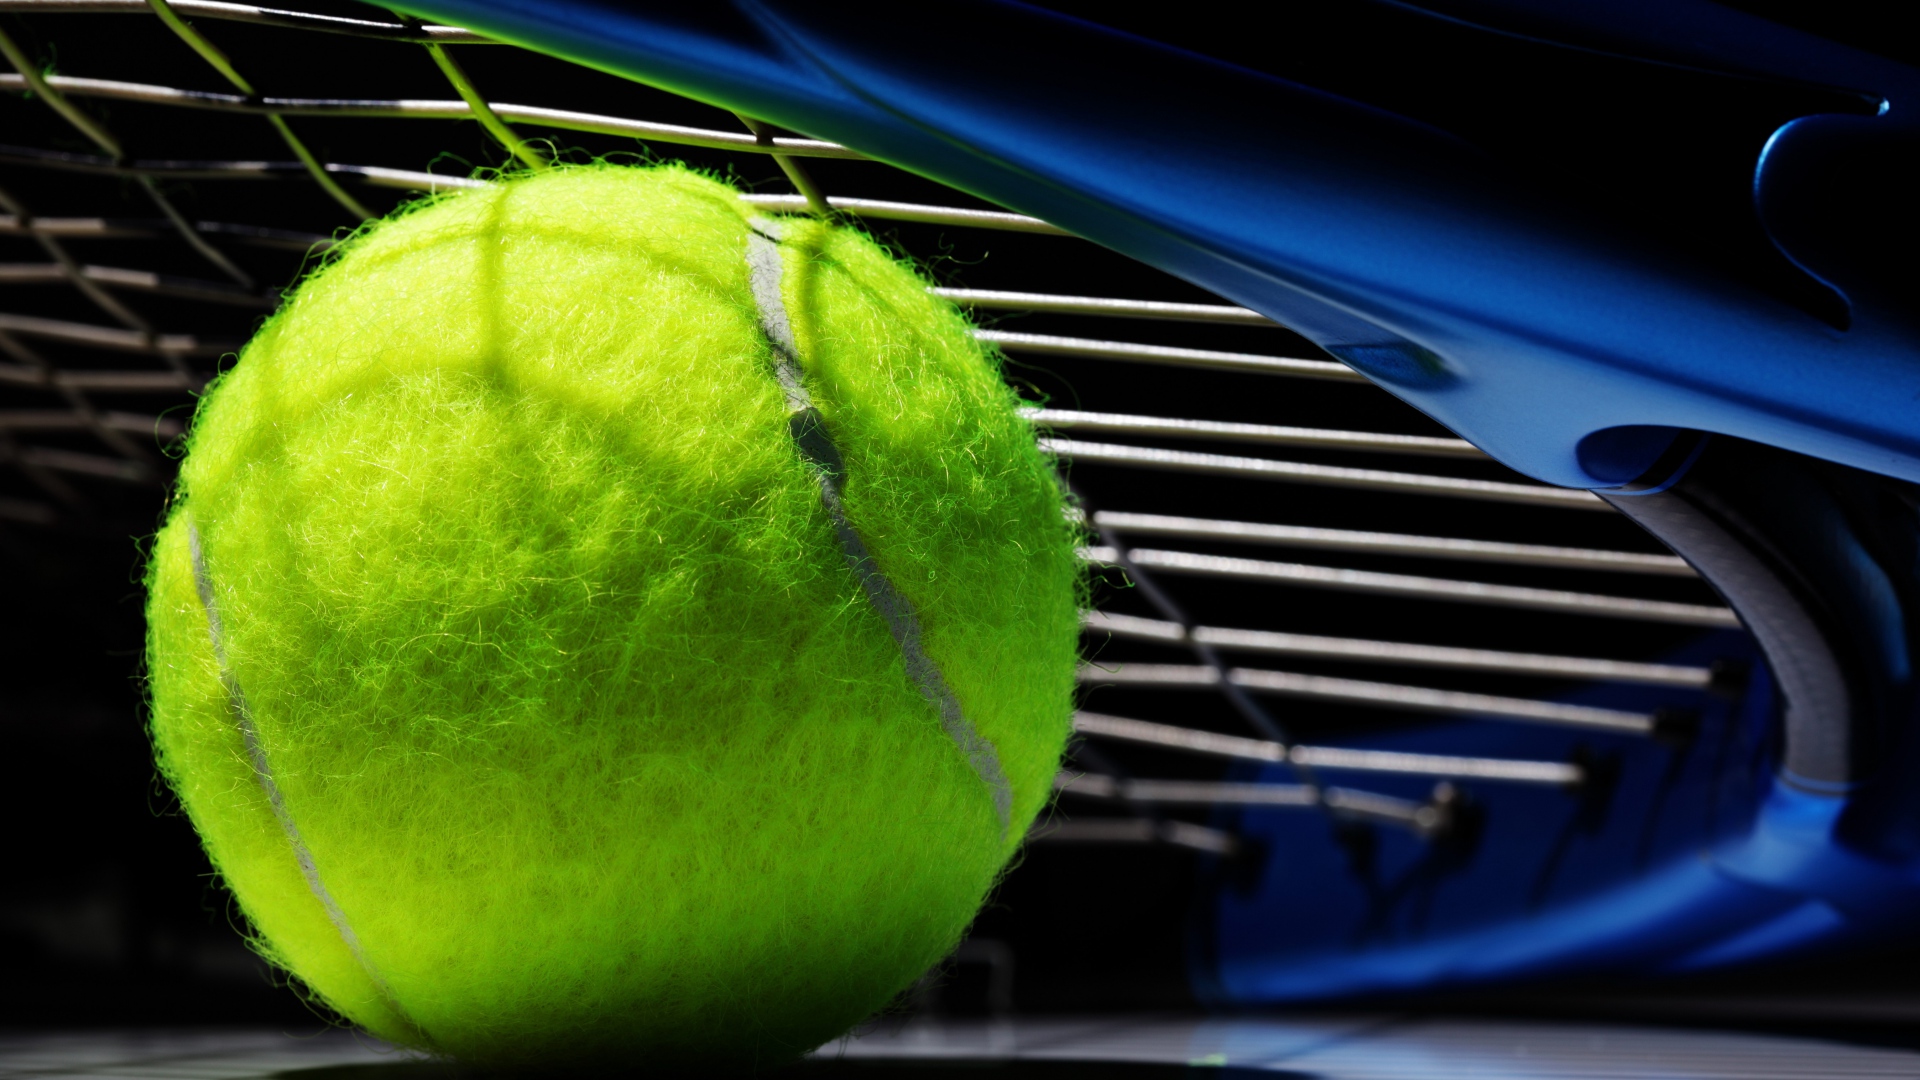 Wallpaper Tennis ball, Tennis, sports, close up